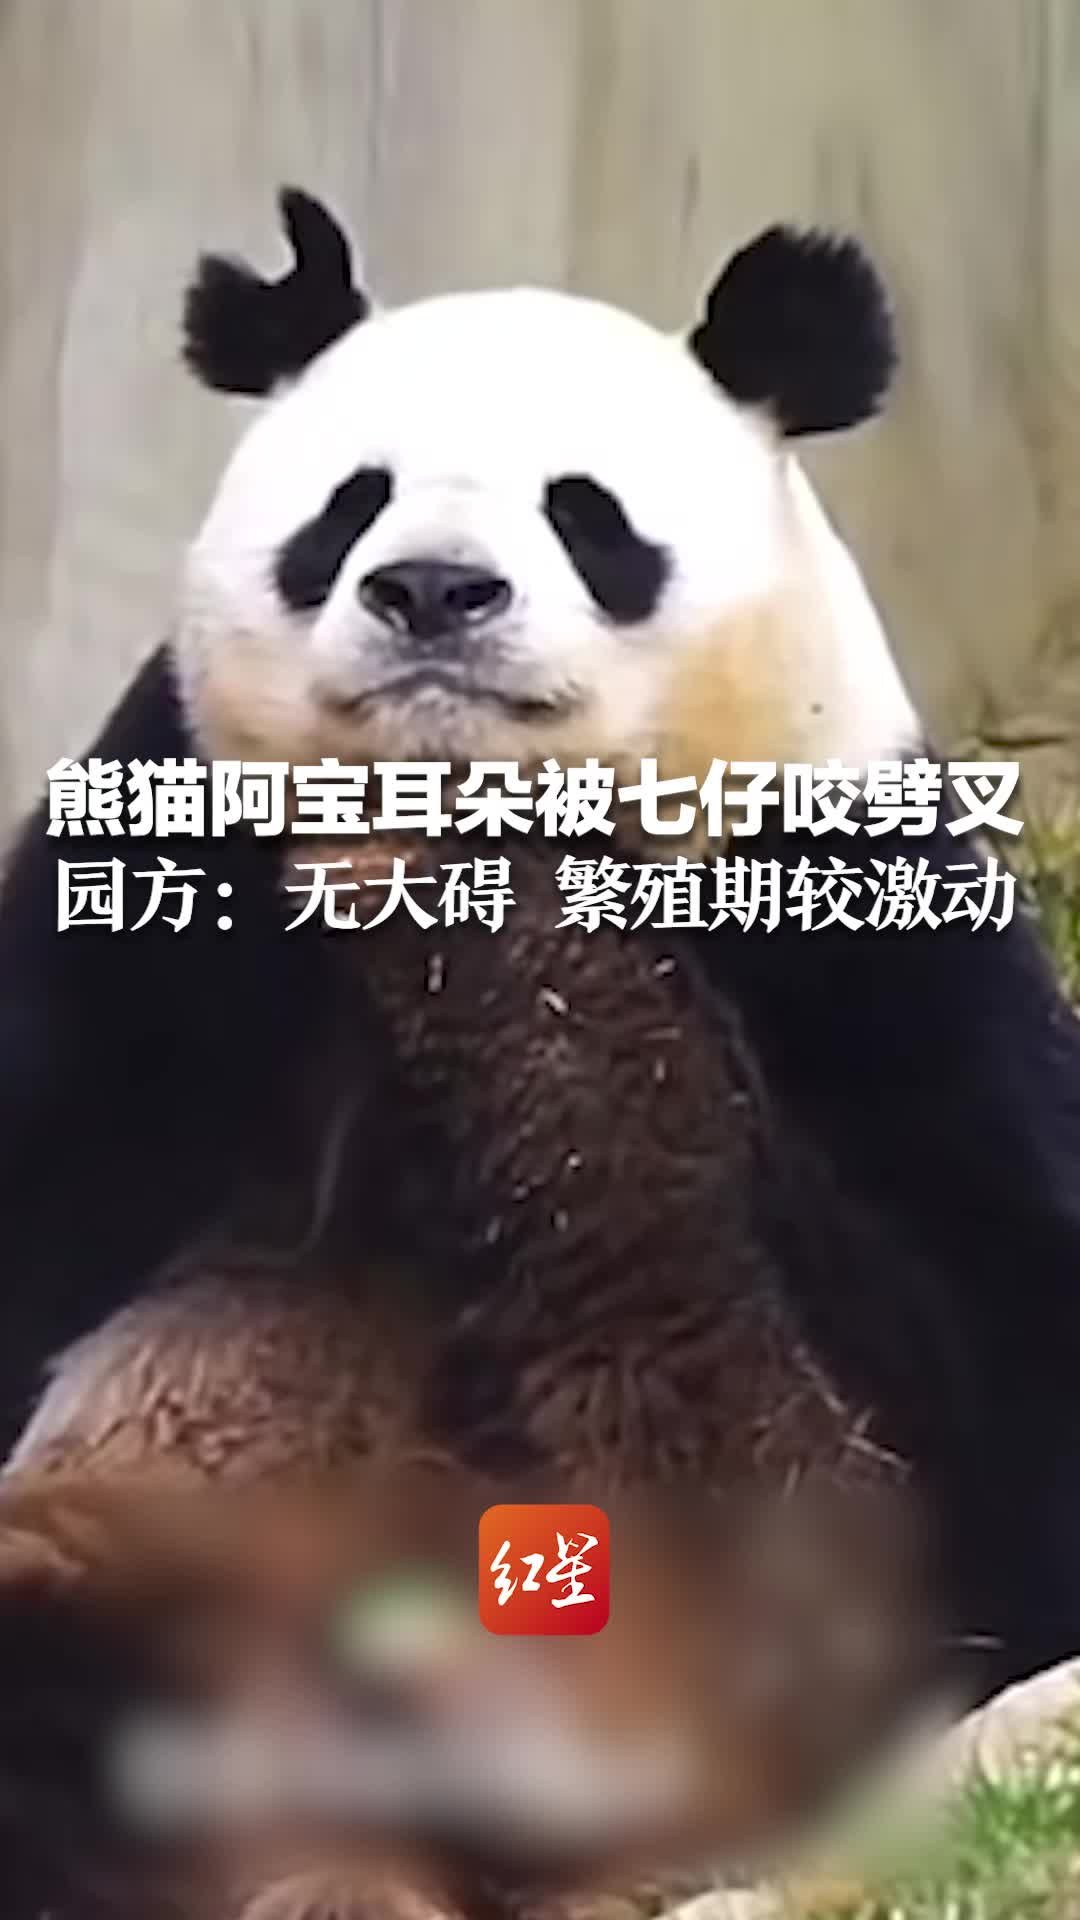 熊猫阿宝耳朵被七仔咬劈叉 园方回应：无大碍 繁殖期较激动